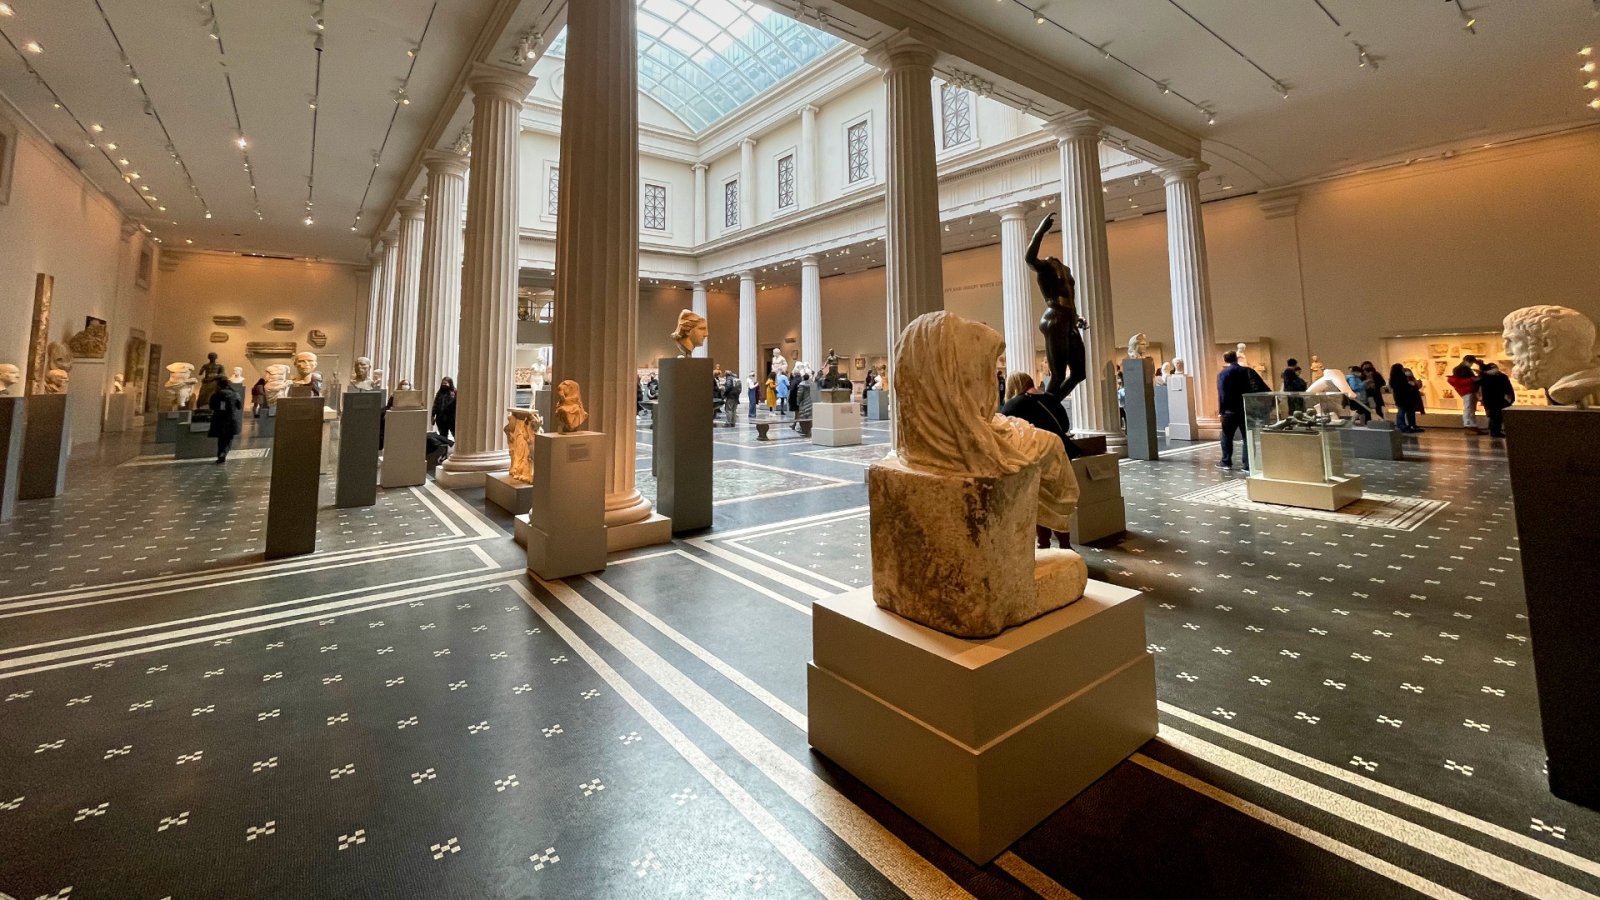 Cu 1,7 milioane de vizitatori mai puțin pentru Met - muzeul de artă din SUA cu cea mai mare scădere din ultima vreme